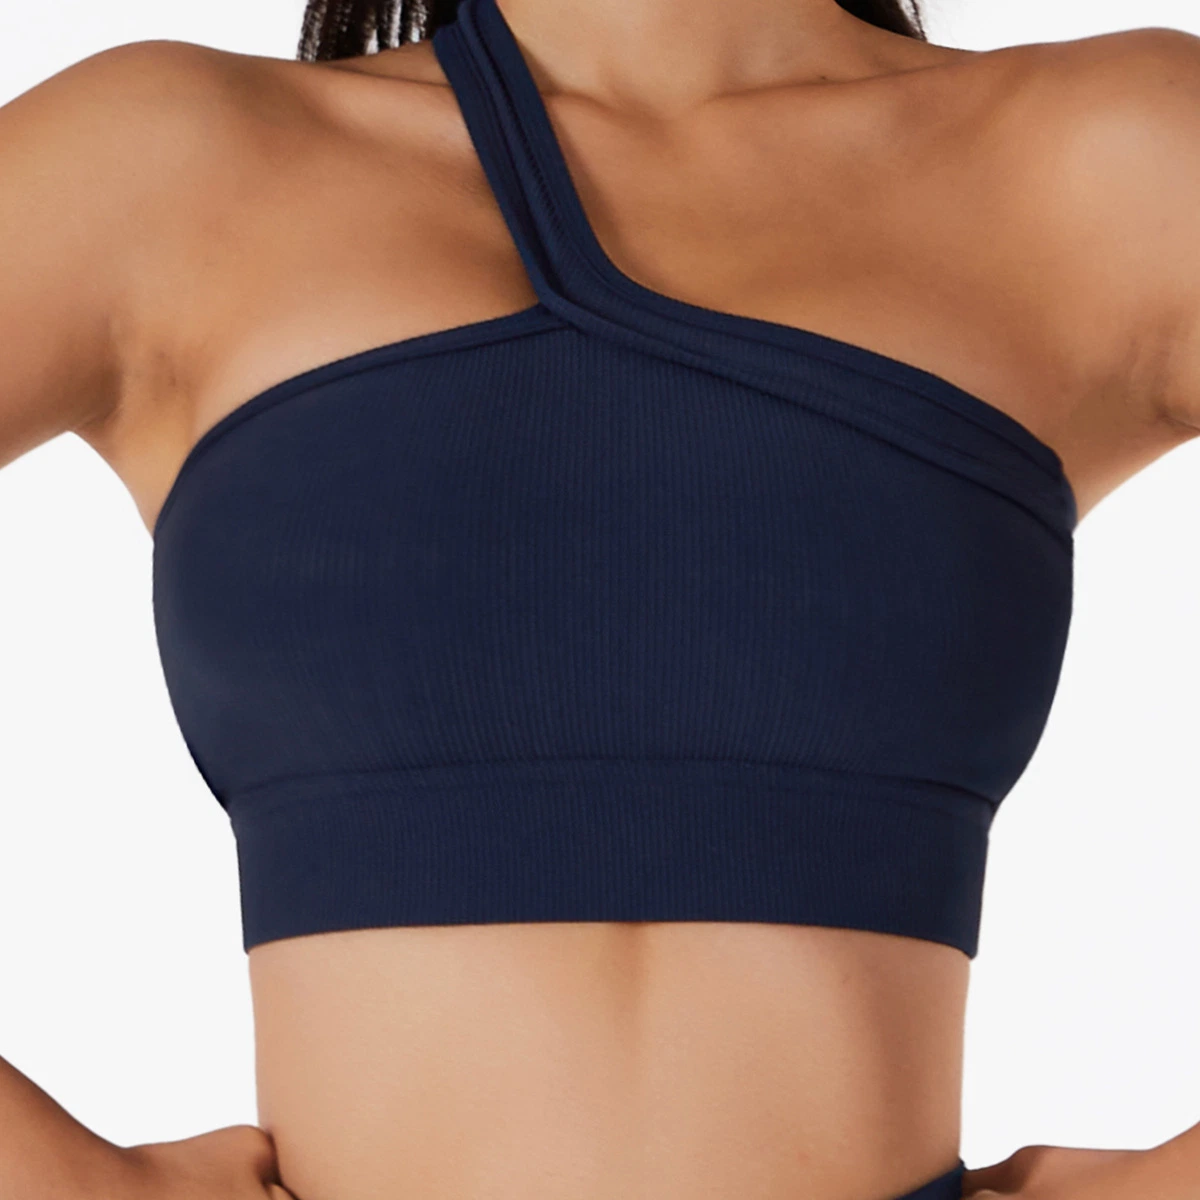 Sy-Z314 Neue einSchulter Yoga BH einteilige schöne Rückensportunterwäsche Gym Fitness Yoga Kleidung für Frauen tragen